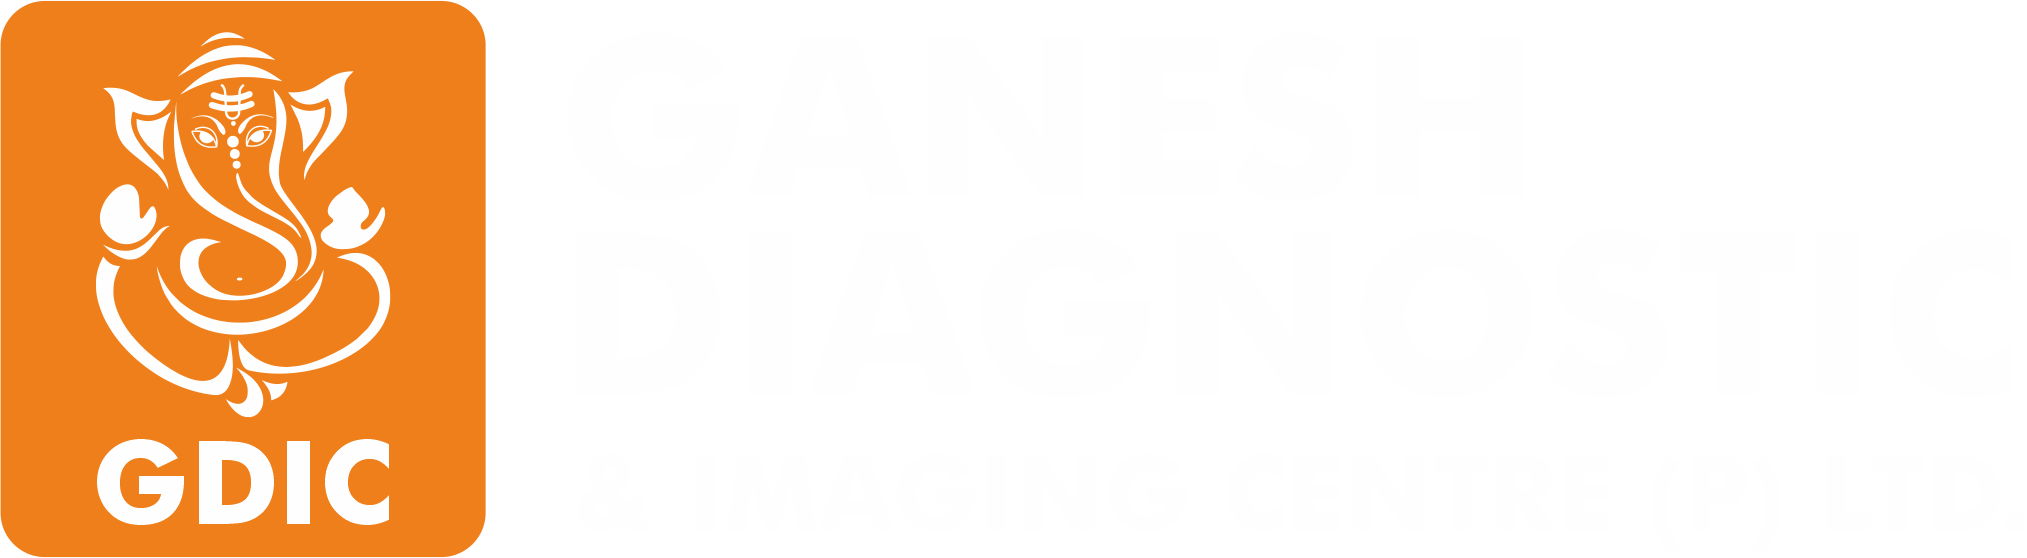 Diagnostic and Imaging Centre Delhi